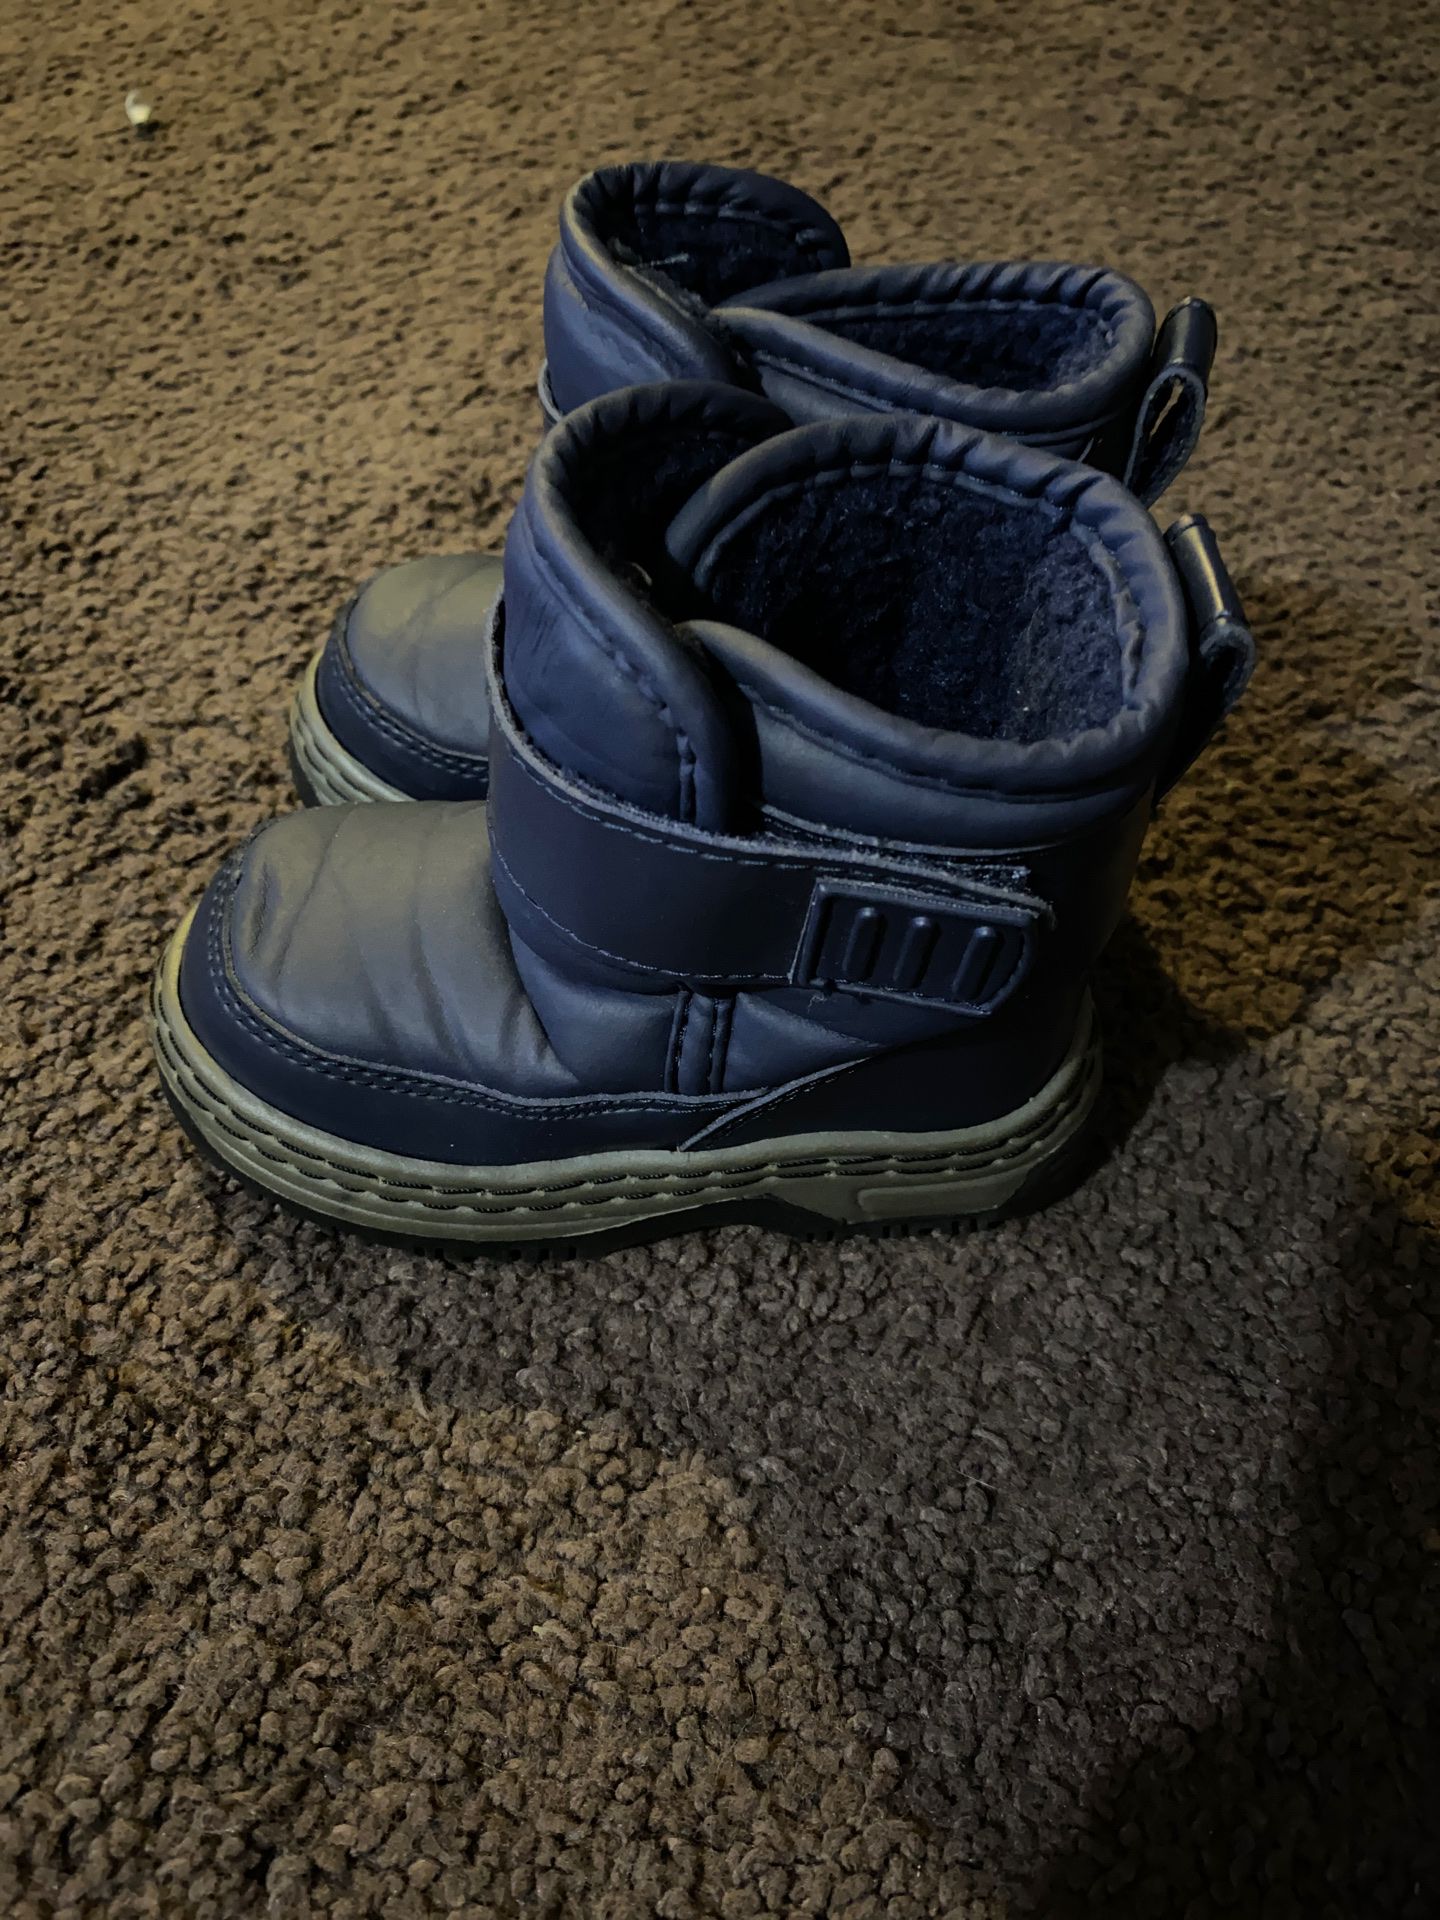 Circo Size 6 blue snow rain boots toddler